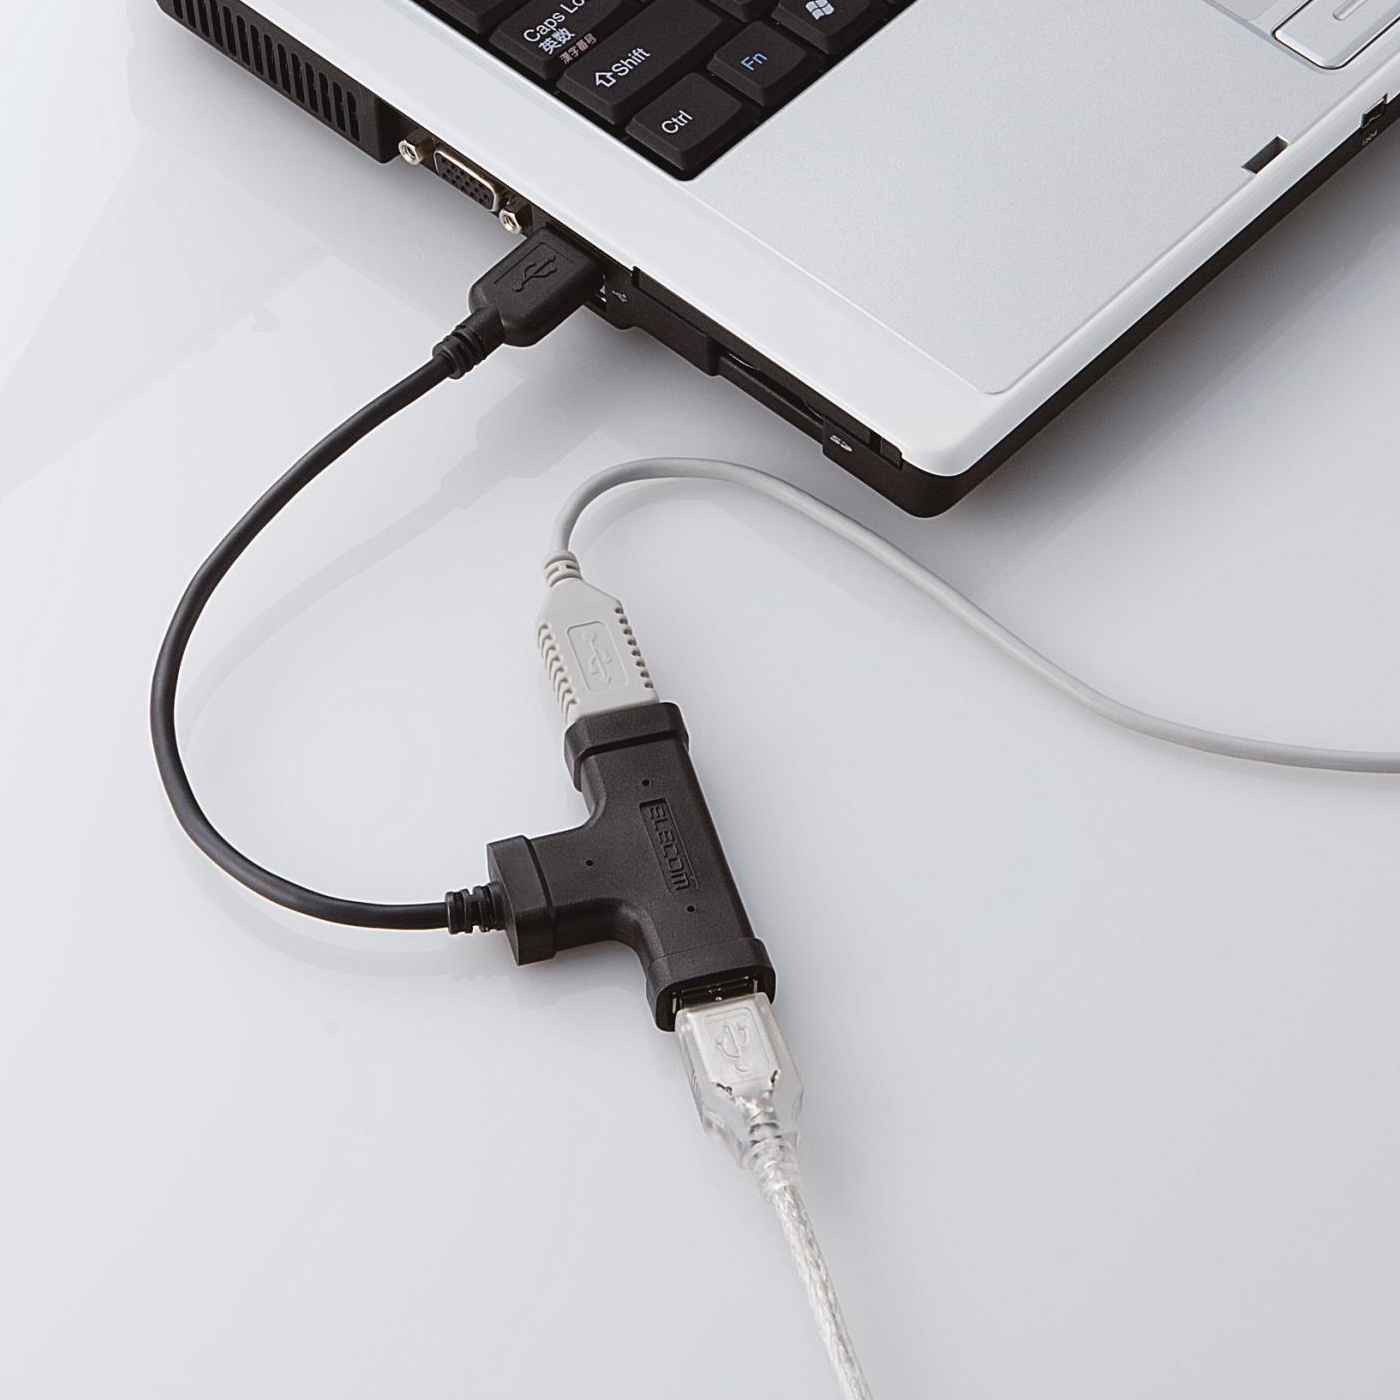 Immagine pubblicata in relazione al seguente contenuto: Da Elecom tre nuovi HUB USB 2.0 dal design atipico | Nome immagine: news4381_2.jpg